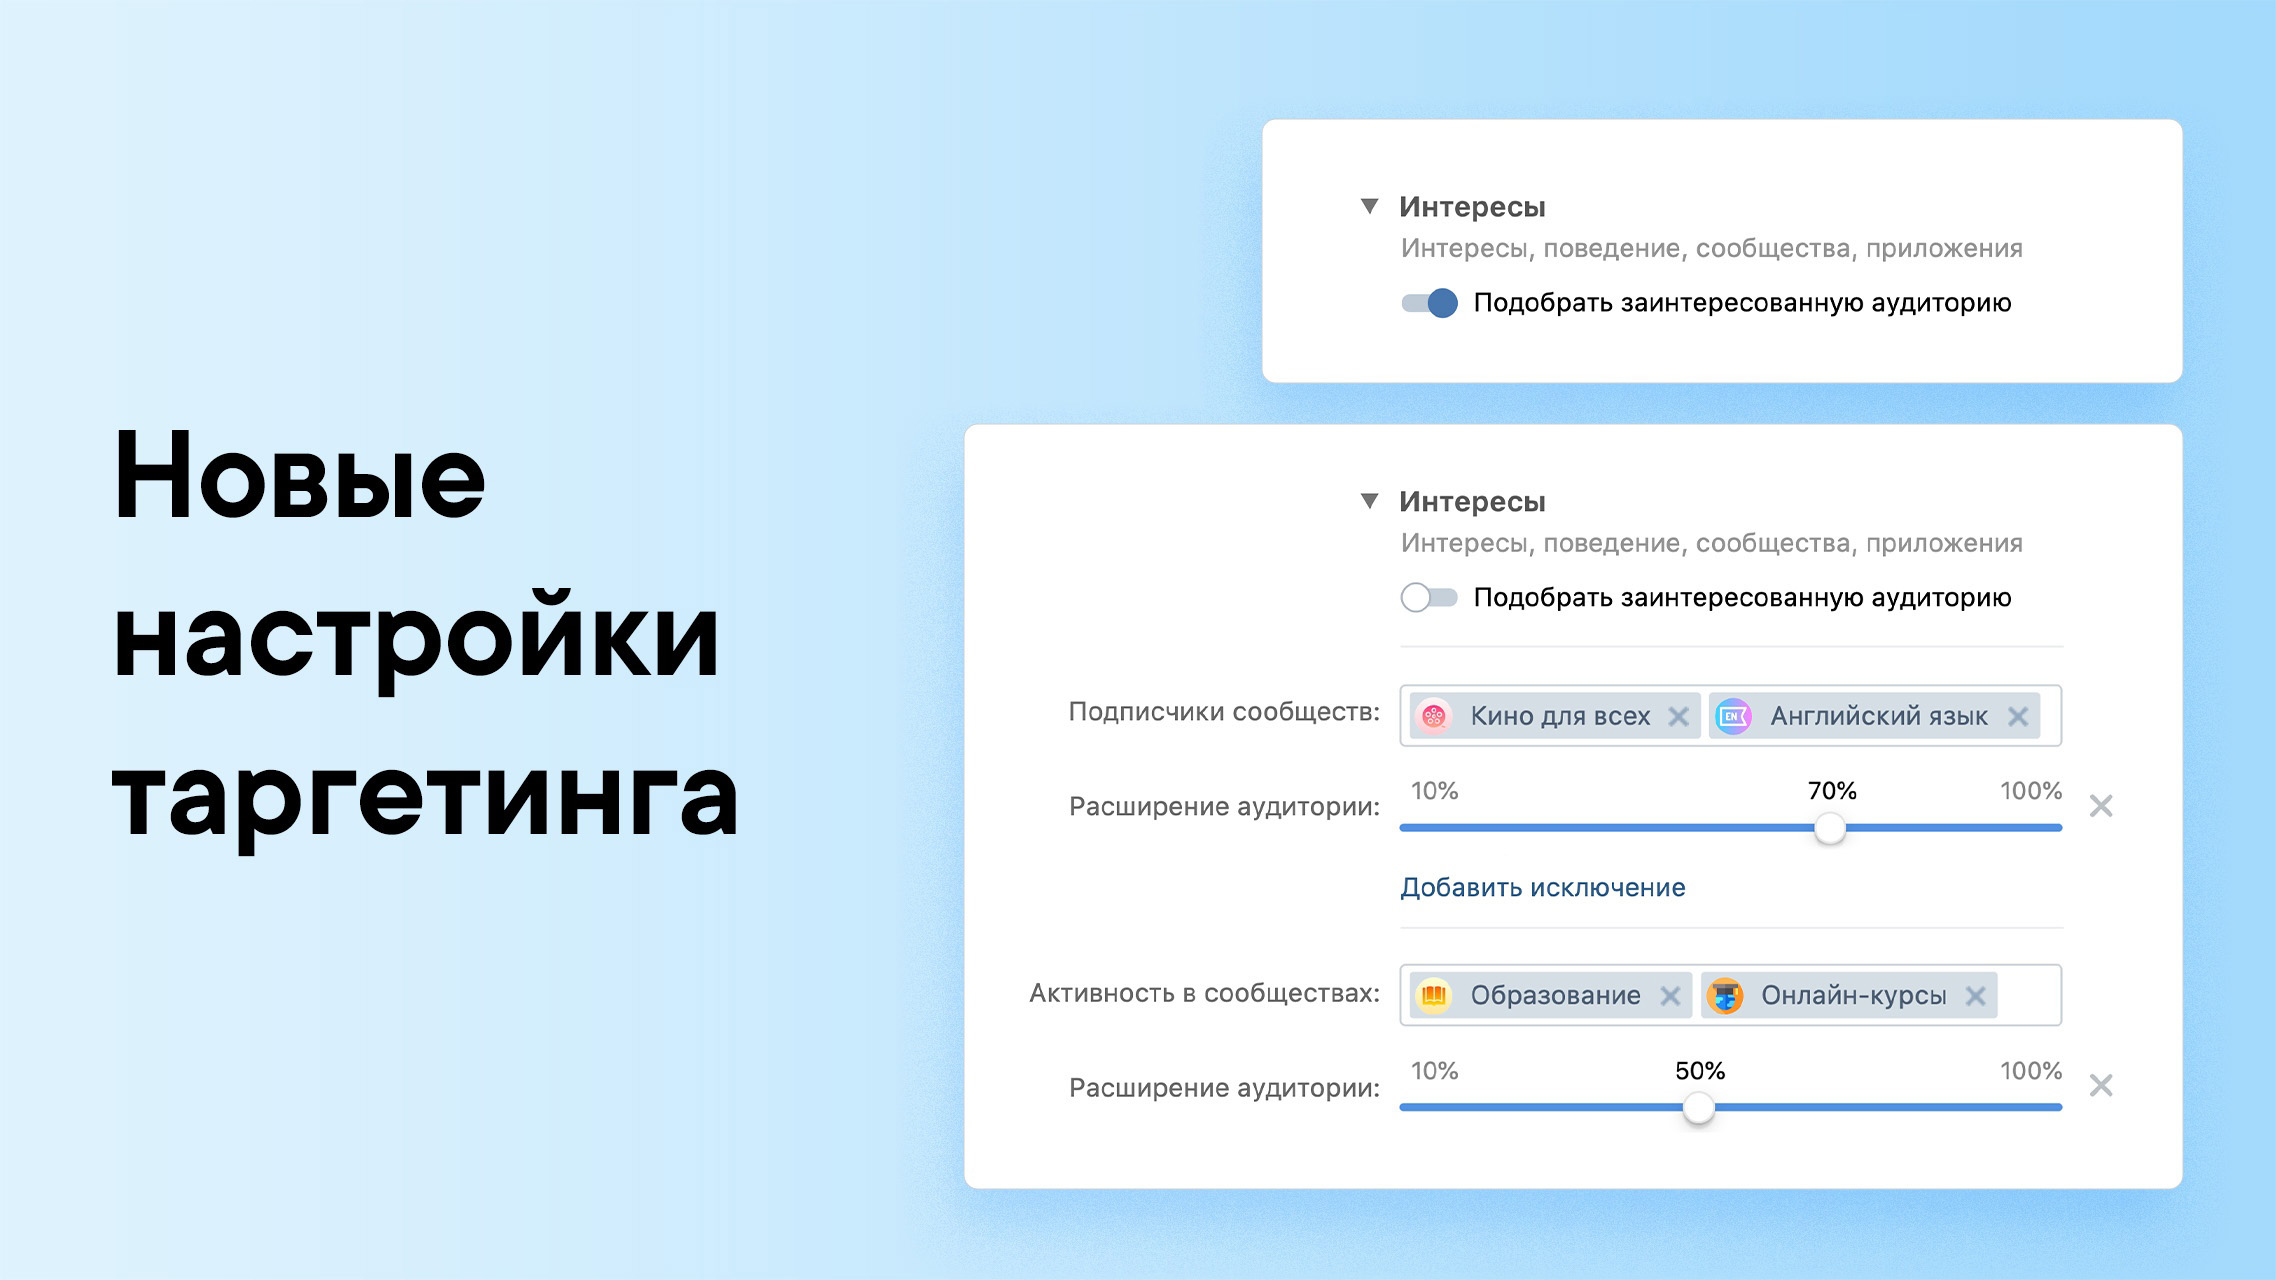 ВКонтакте добавила две новые настройки таргетинга - Заинтересованная аудитория и Расширение аудитории 